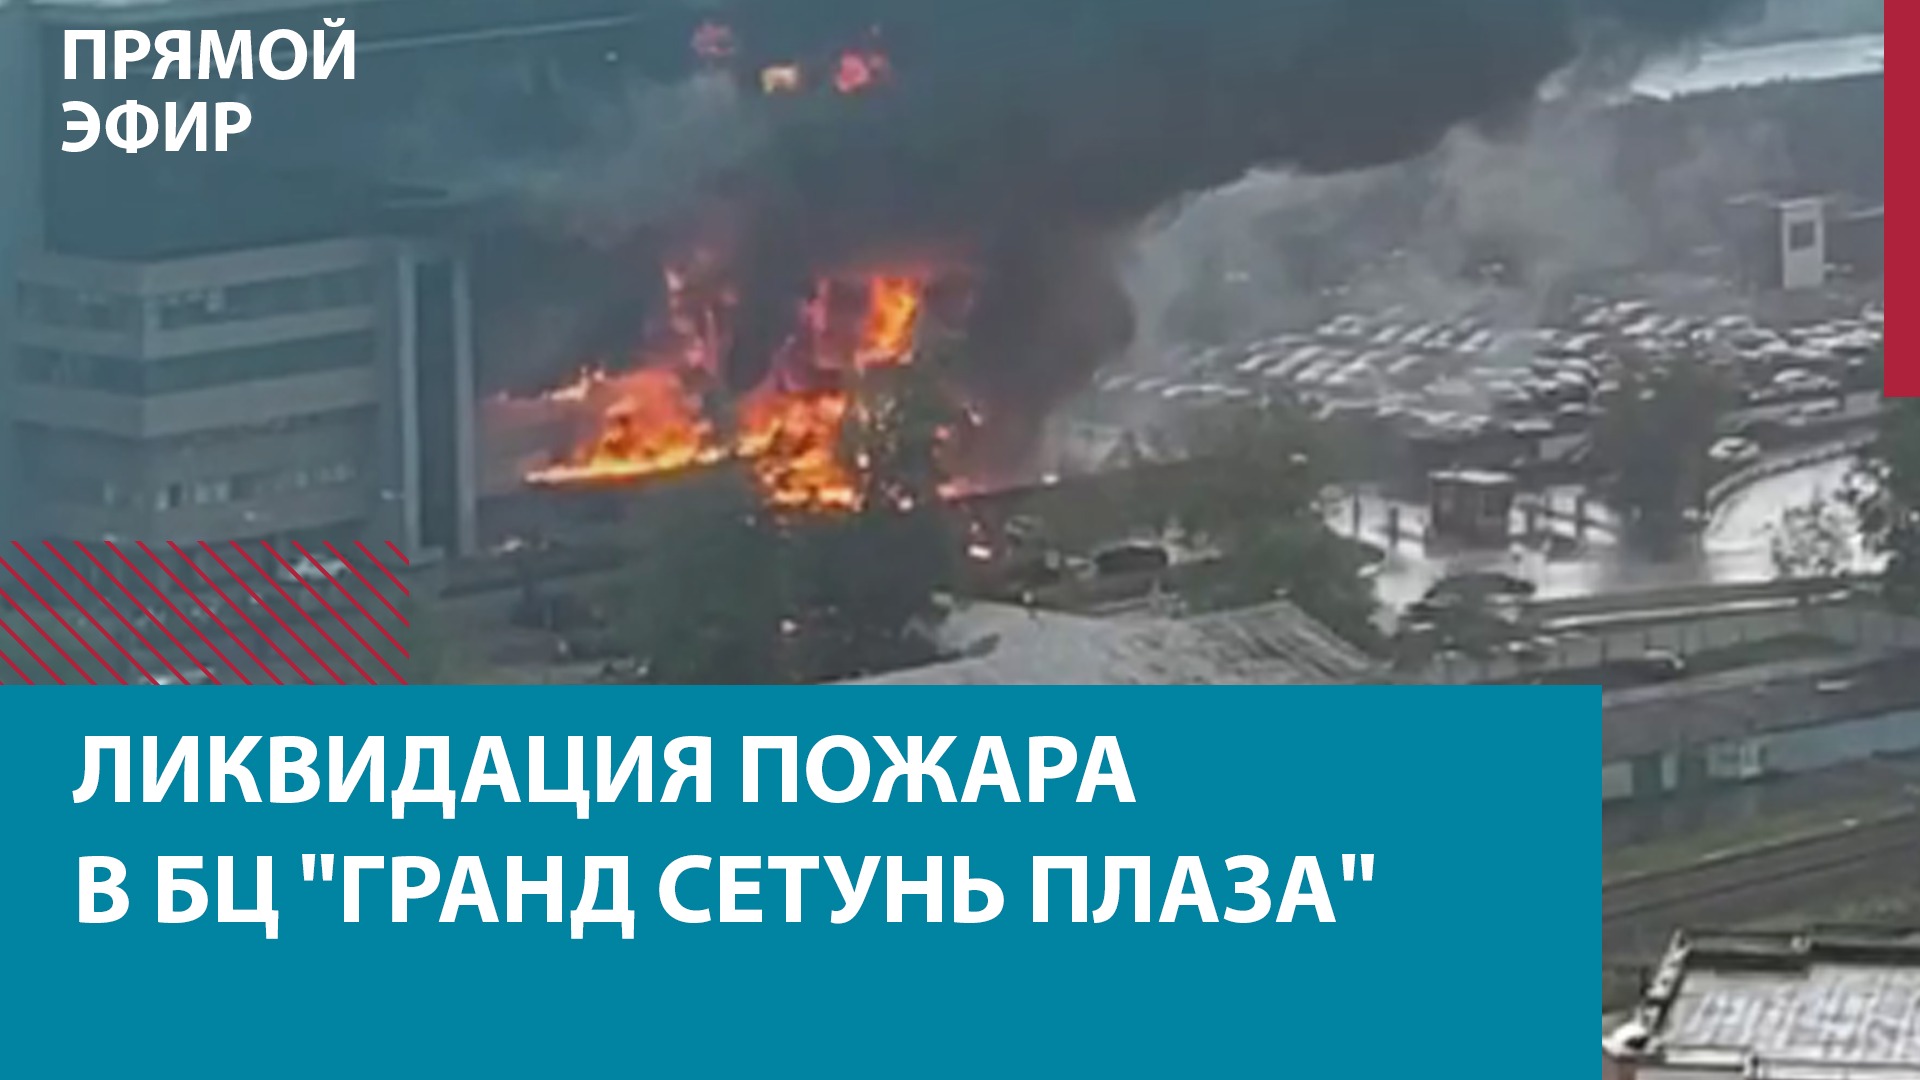 Пожар в БЦ "Гранд Сетунь Плаза" — Москва FM